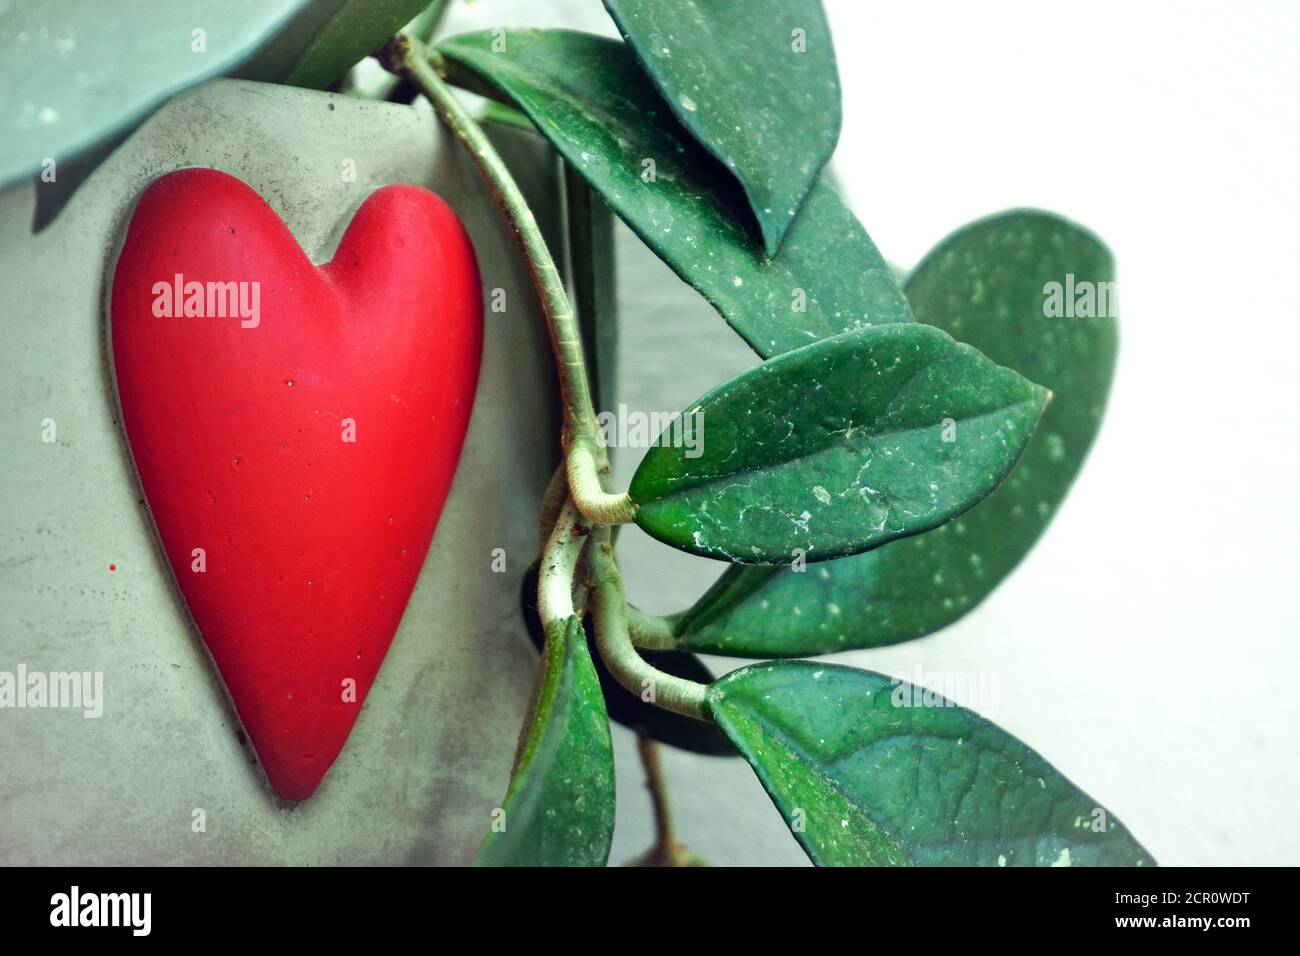 Waxplant hoya carnosa in heart shaped pot Stock Photo